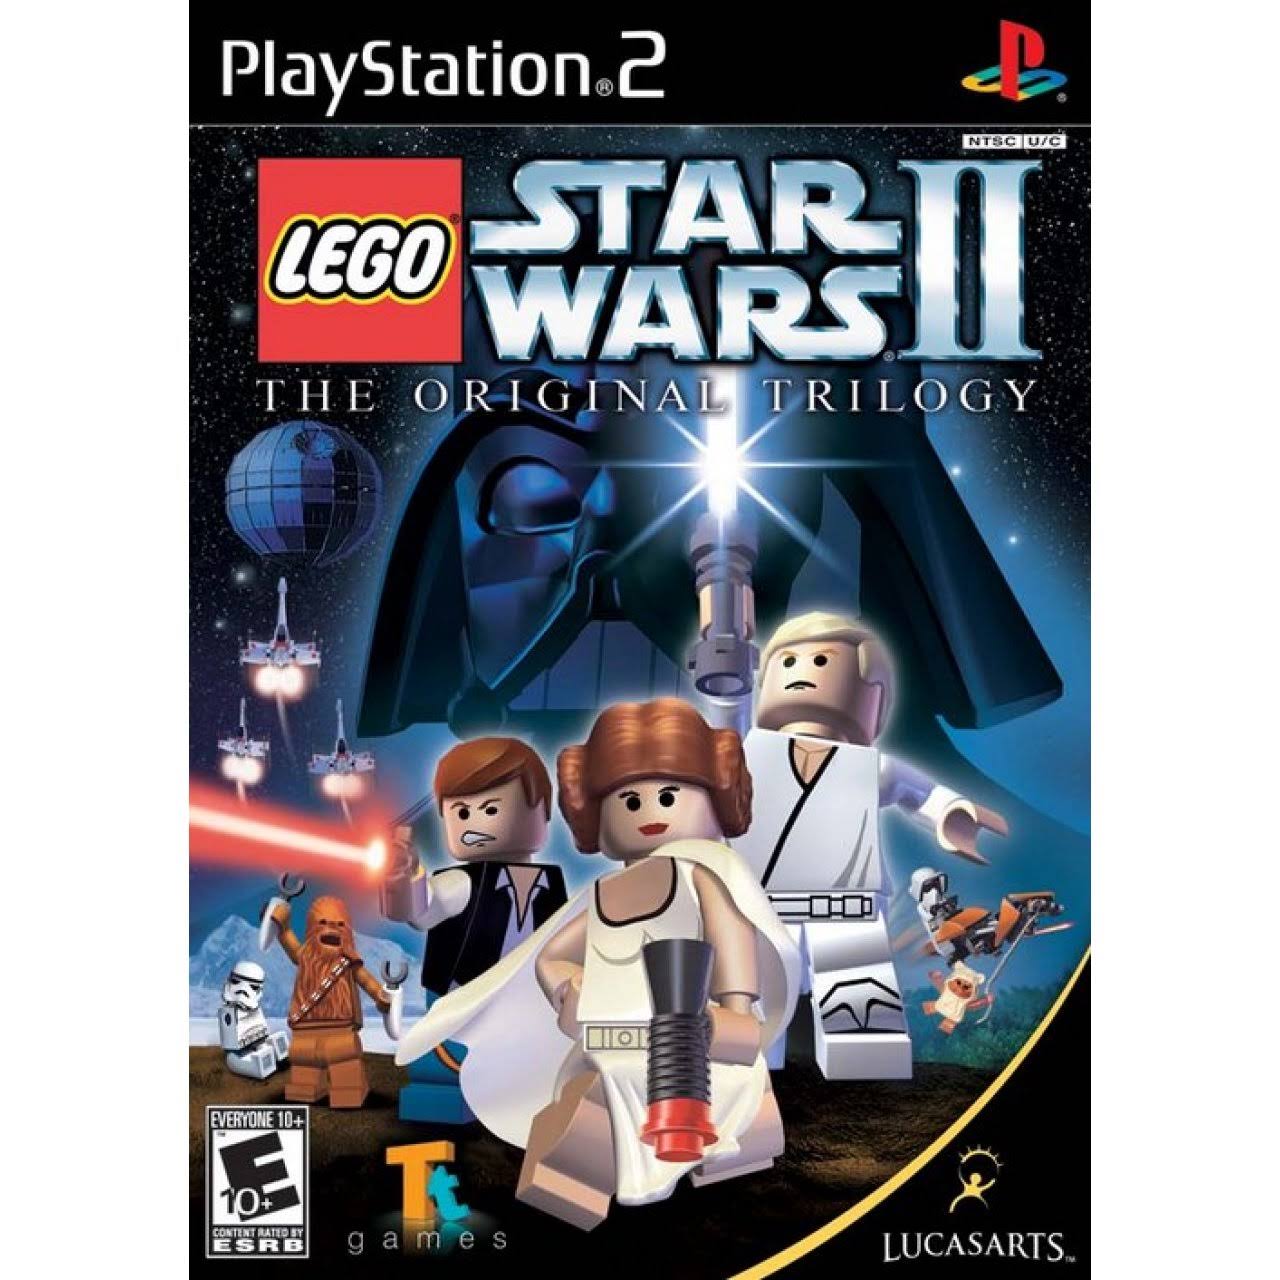 LEGO Star Wars II: The Original Trilogy - Playstation 2